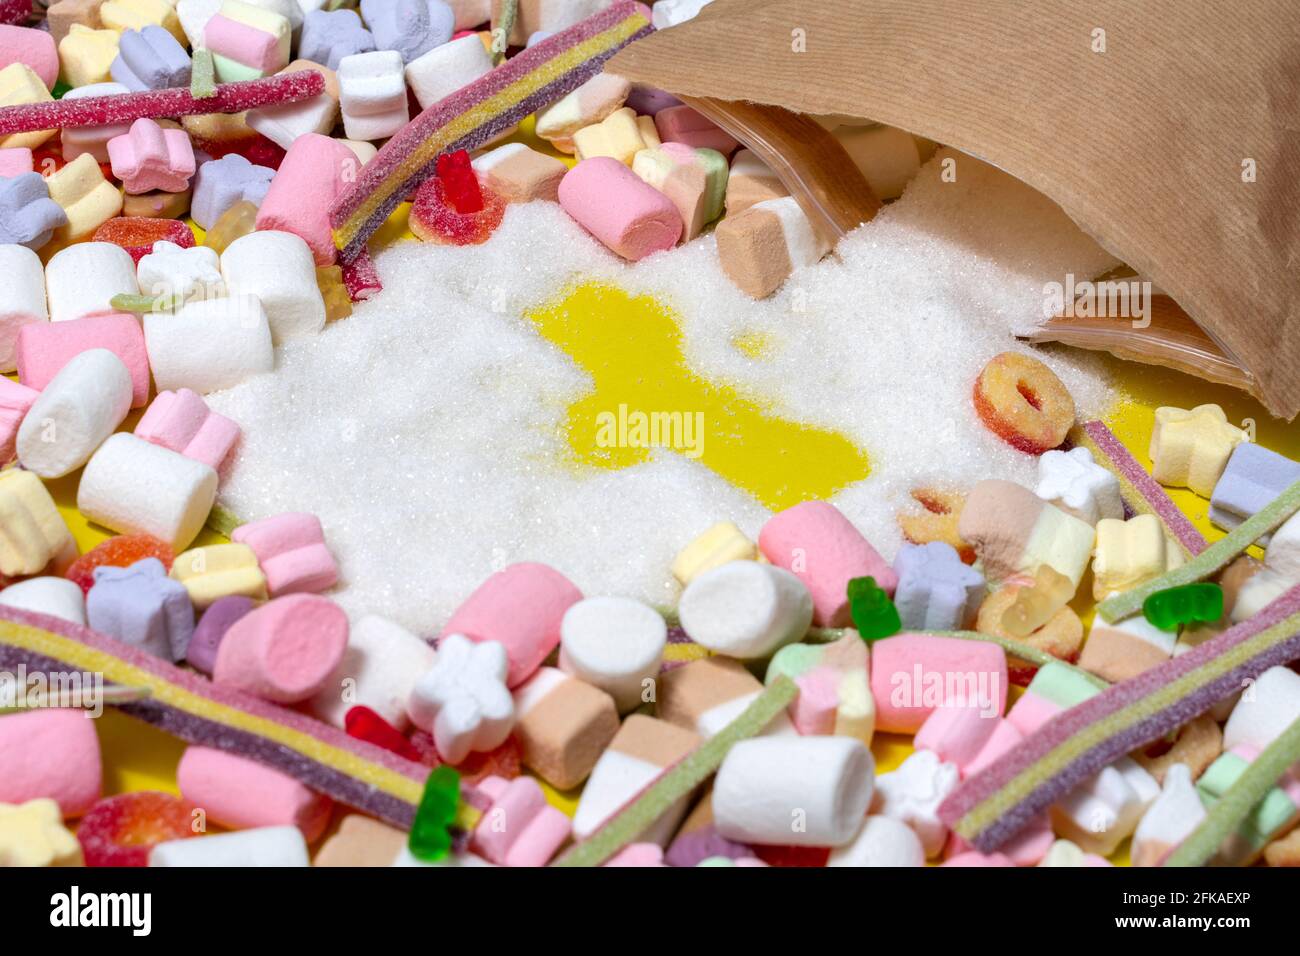 el problema del consumo excesivo de azúcar. el azúcar se derrama de la bolsa, muchos dulces y malvaviscos, espacio para texto Foto de stock